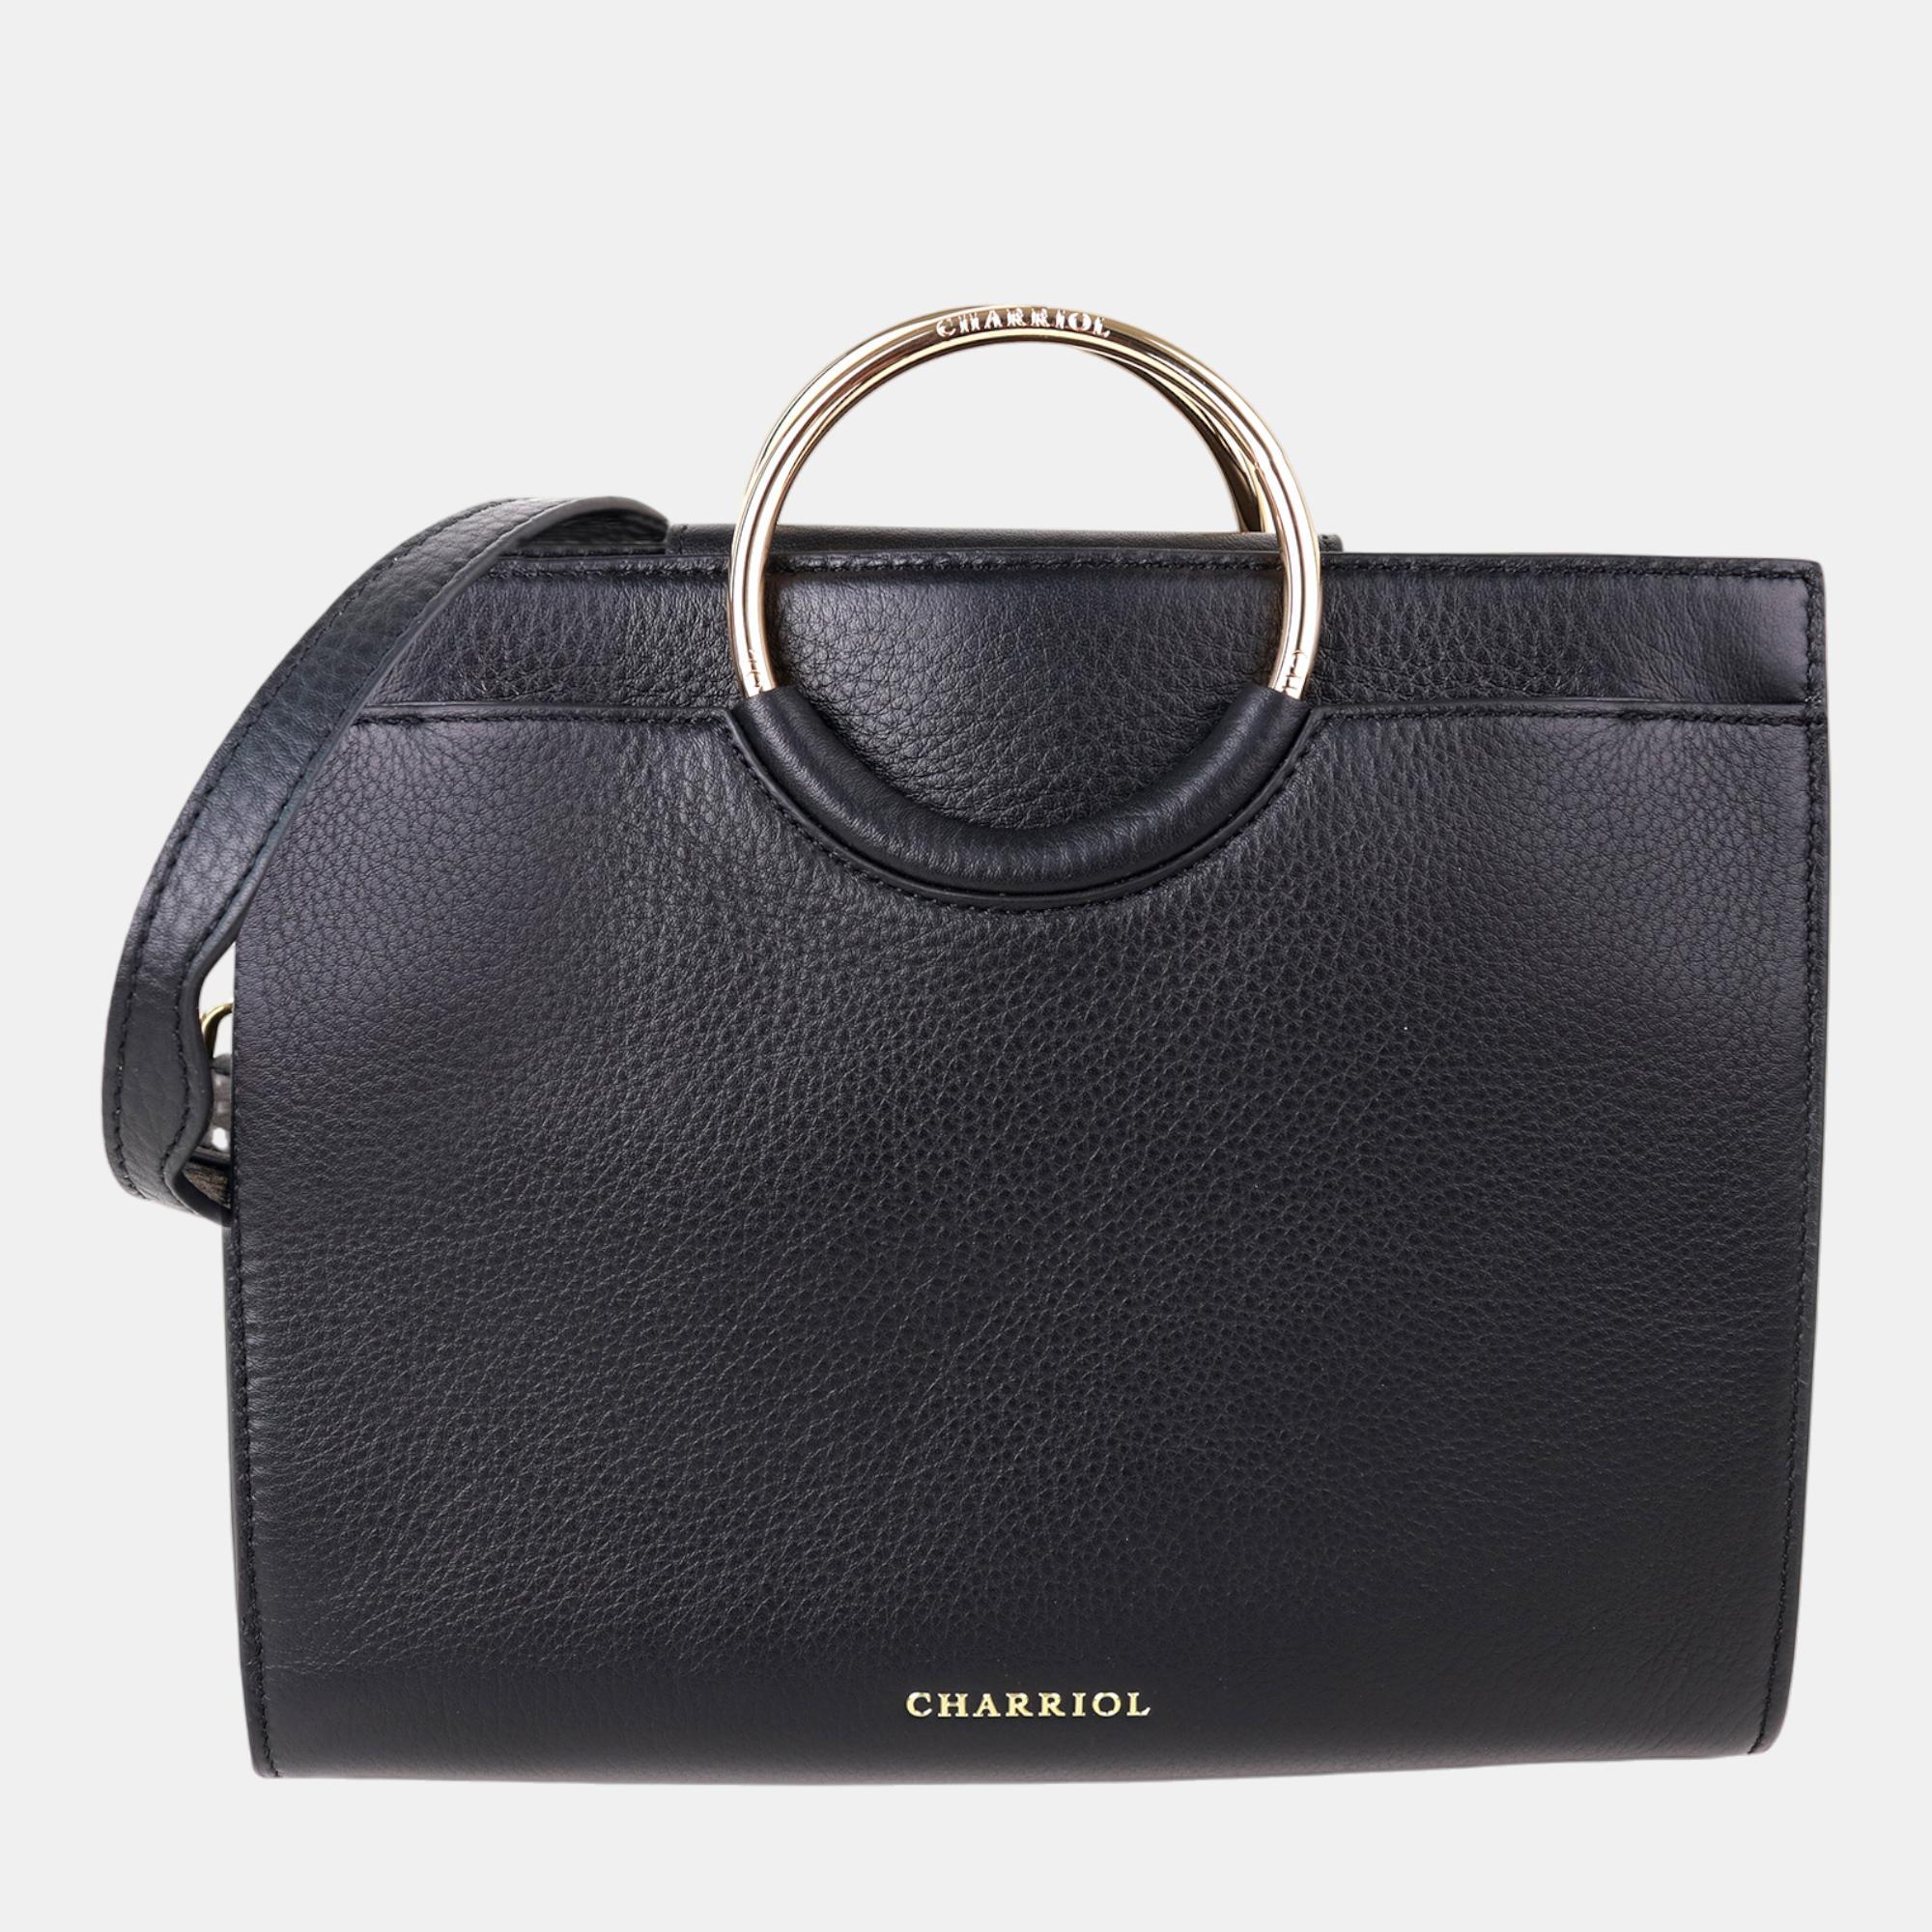 Charriol black/light brown leather forever handbag